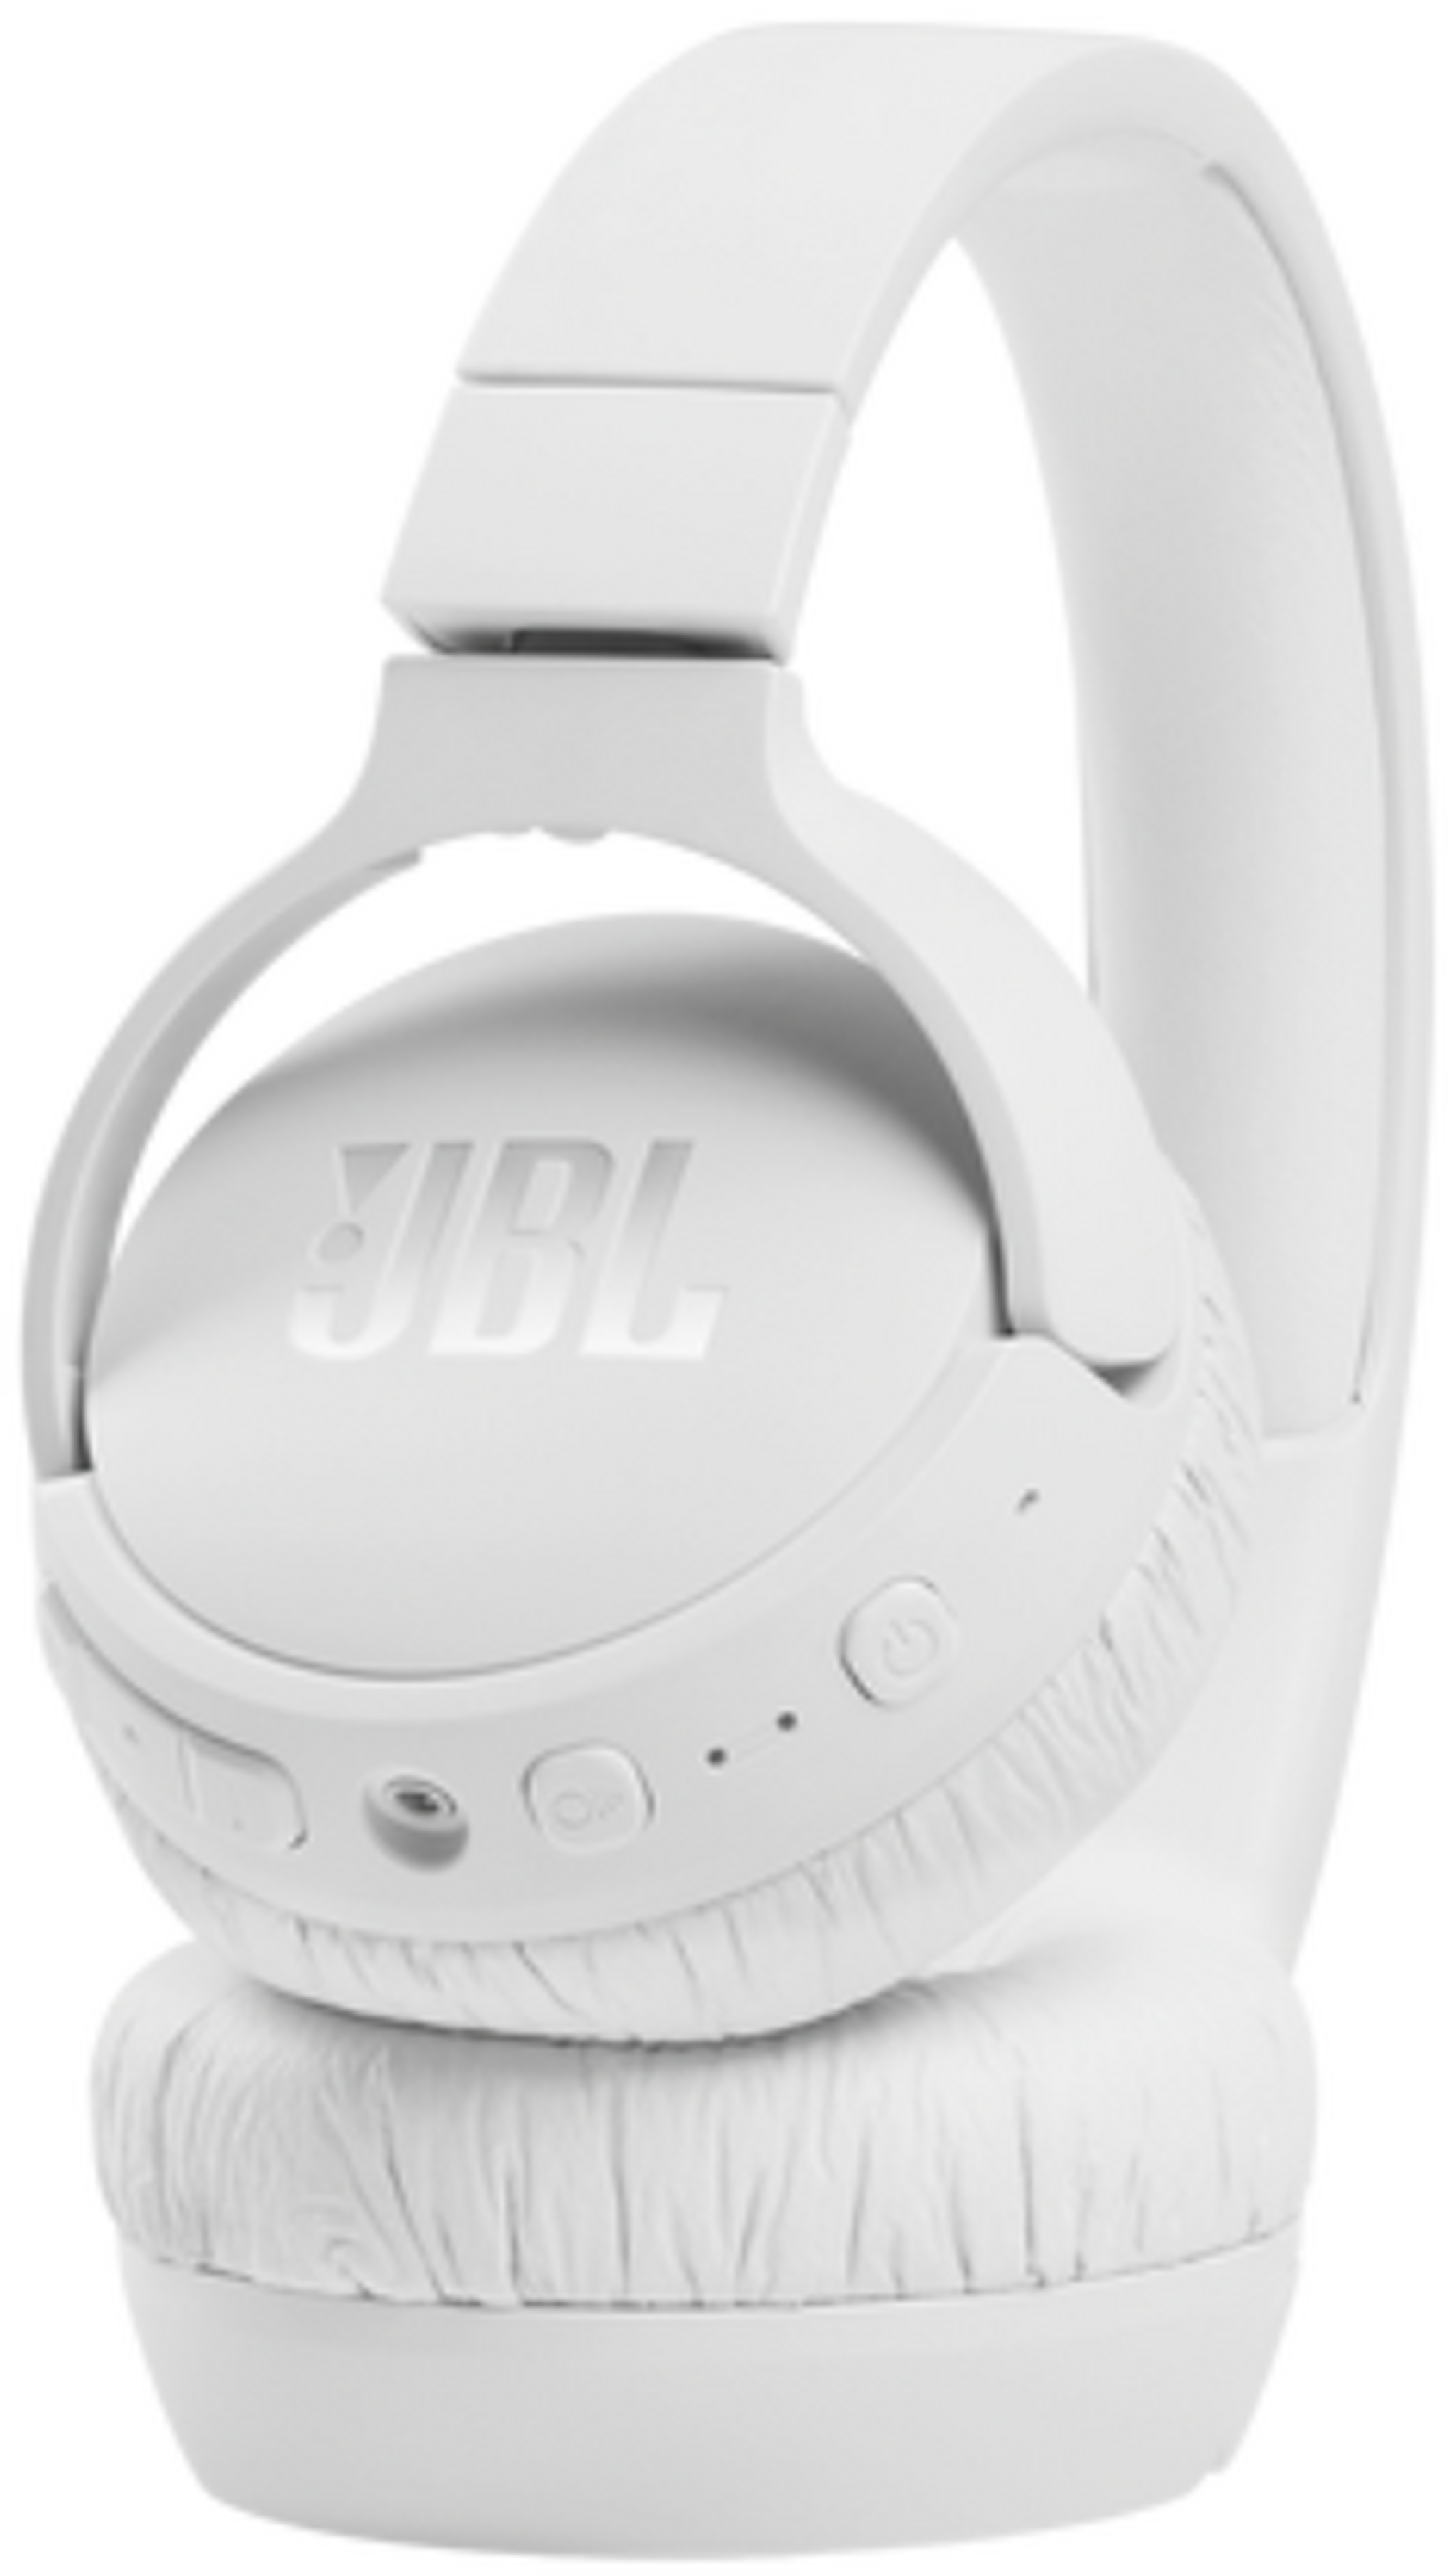 سماعة تون 660 ان سي مع تقنية إلغاء الضوضاء من جي بي ال - أبيض